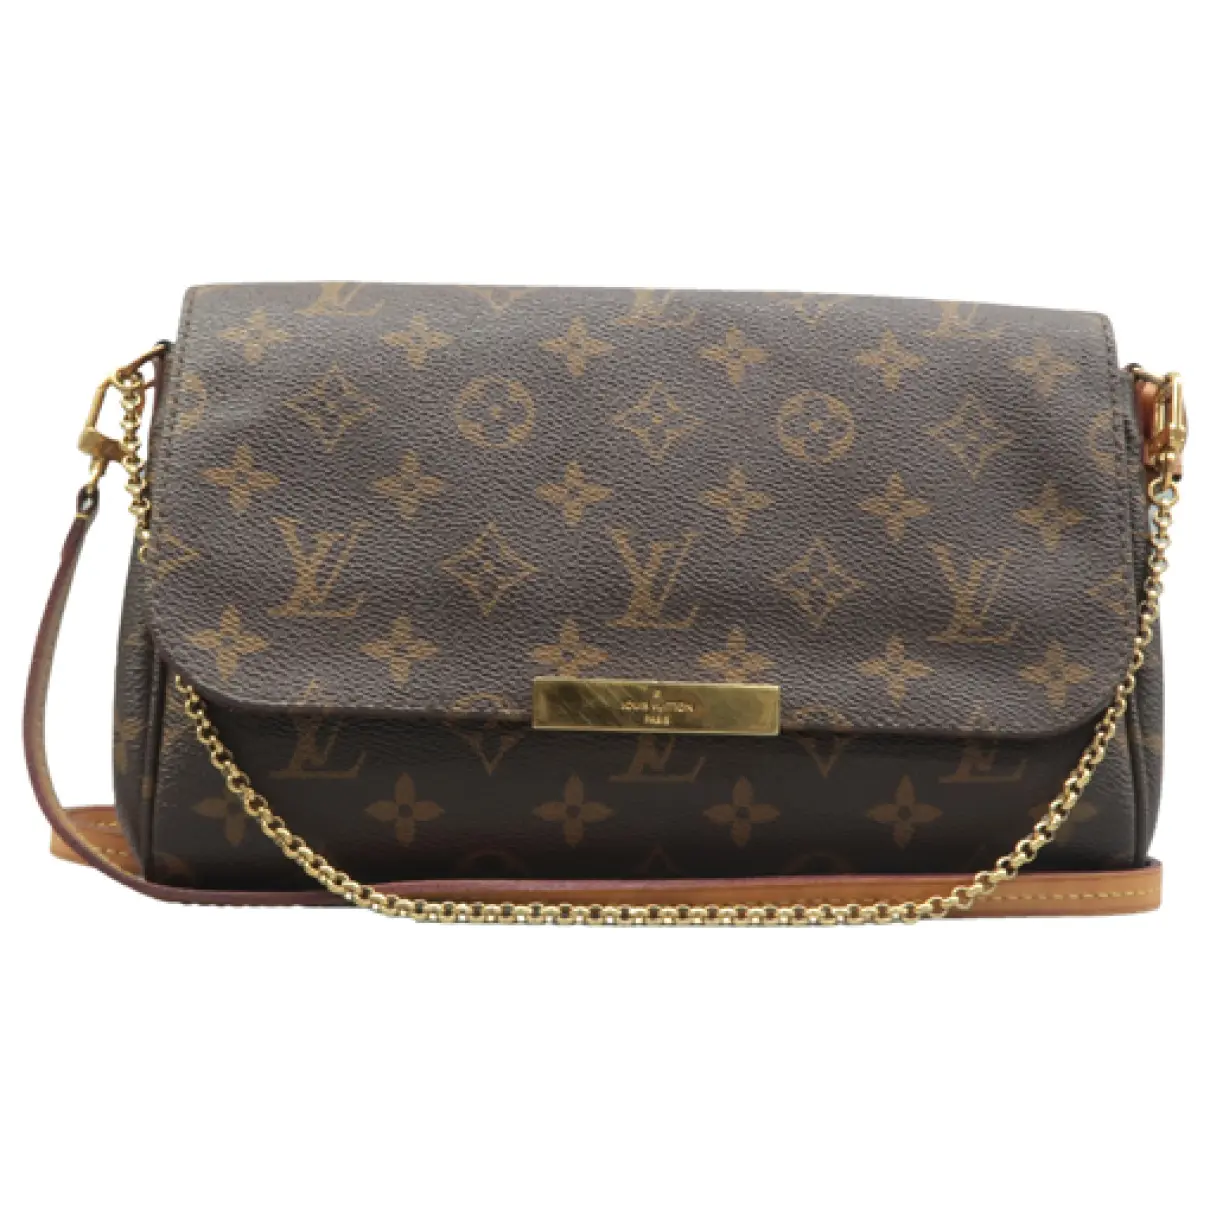 Favorite leather satchel Louis Vuitton